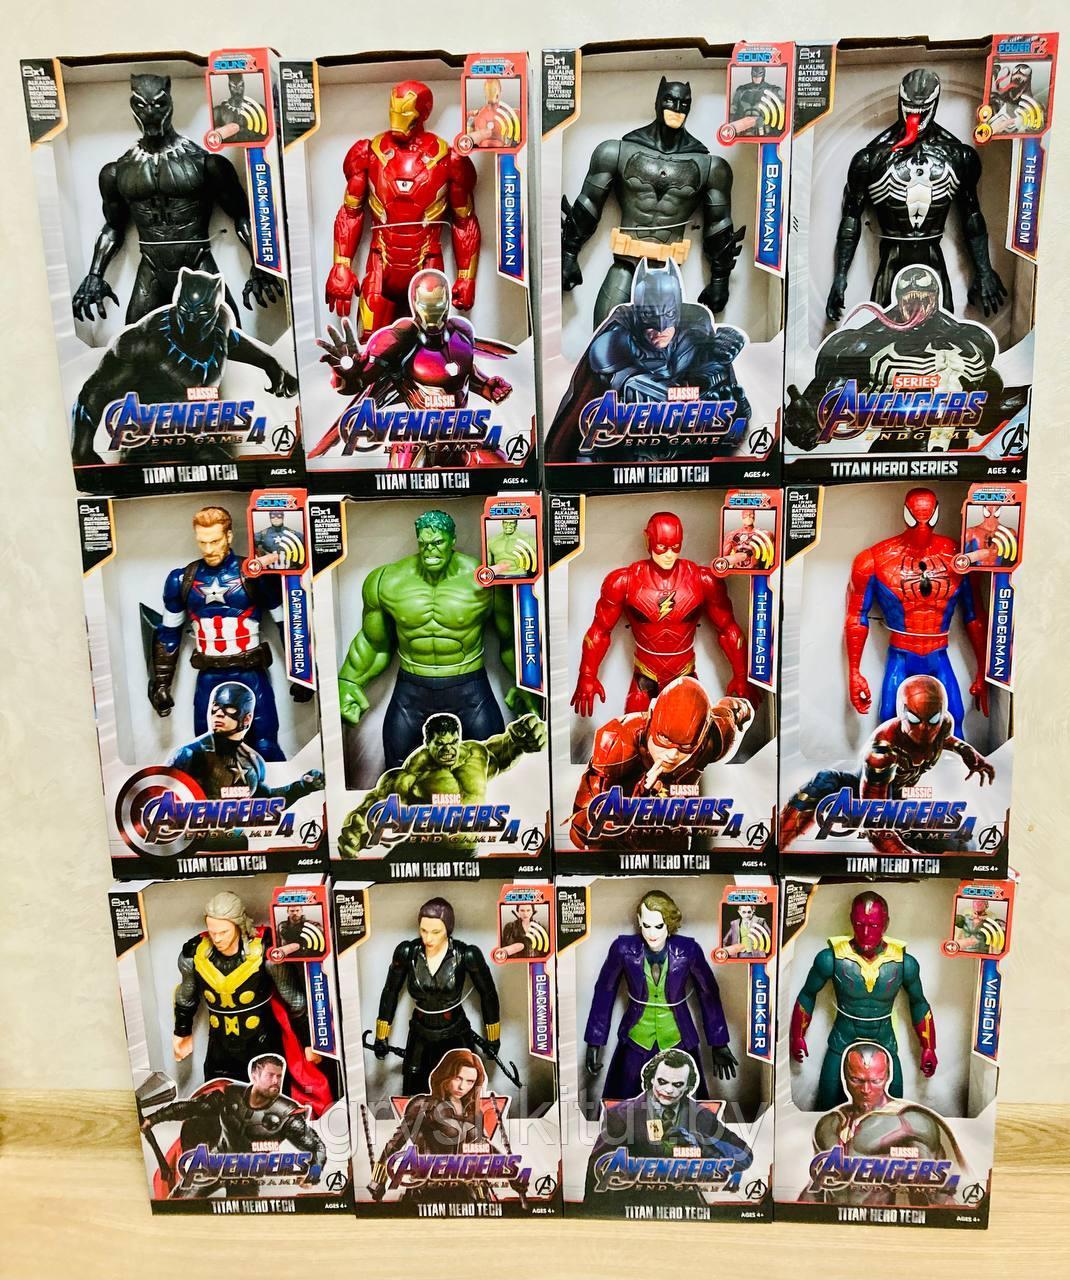 Набор из 12 Супергероев из Самых популярных комиксов Marvel и DC Comics